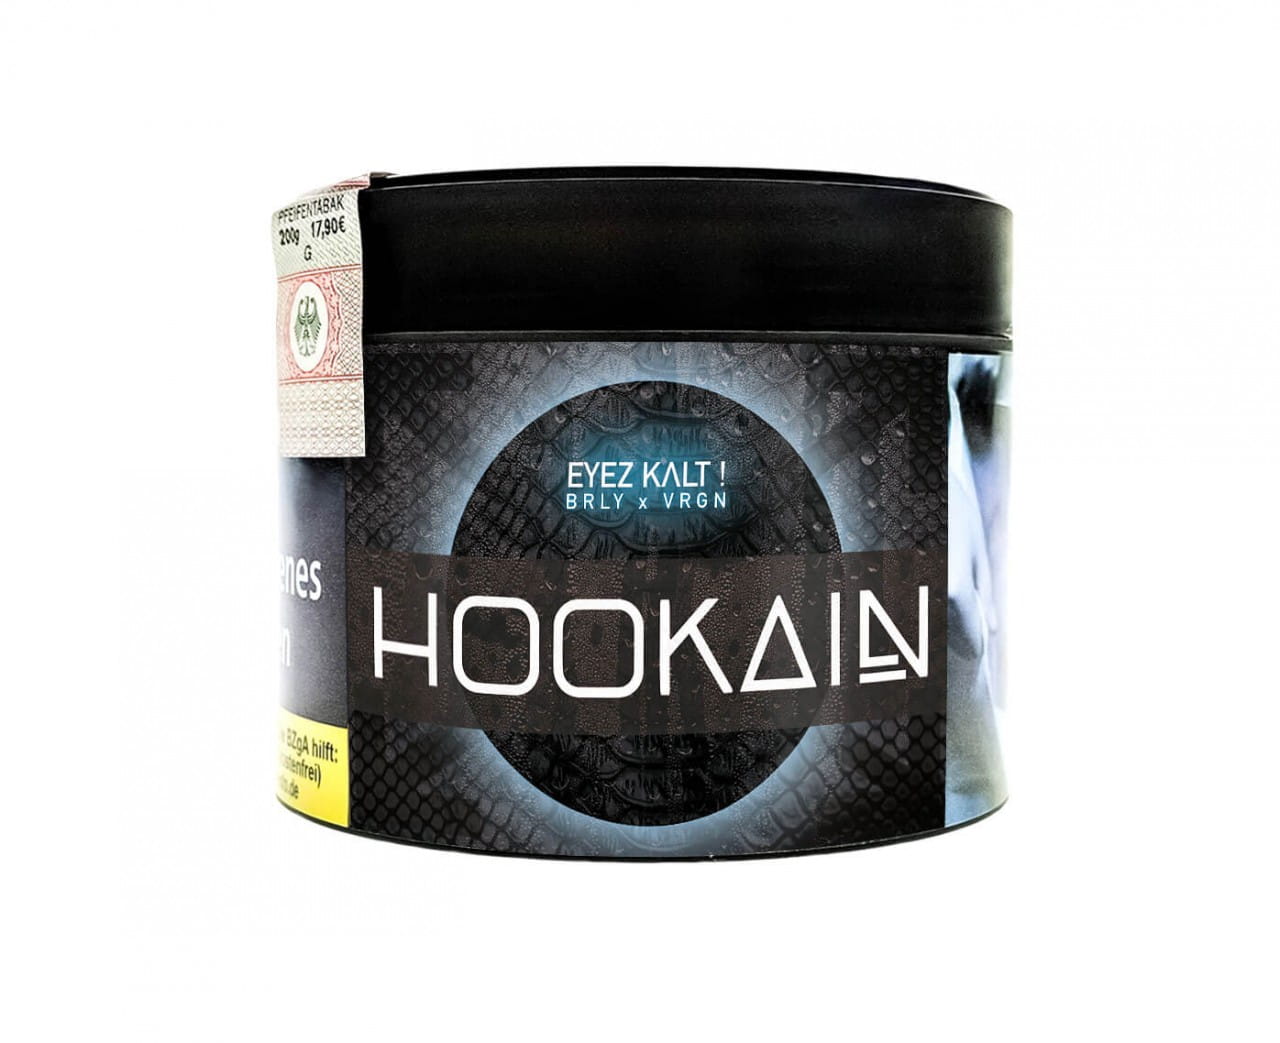 Hookain Burley Tabak - Eyez Kalt 200 g